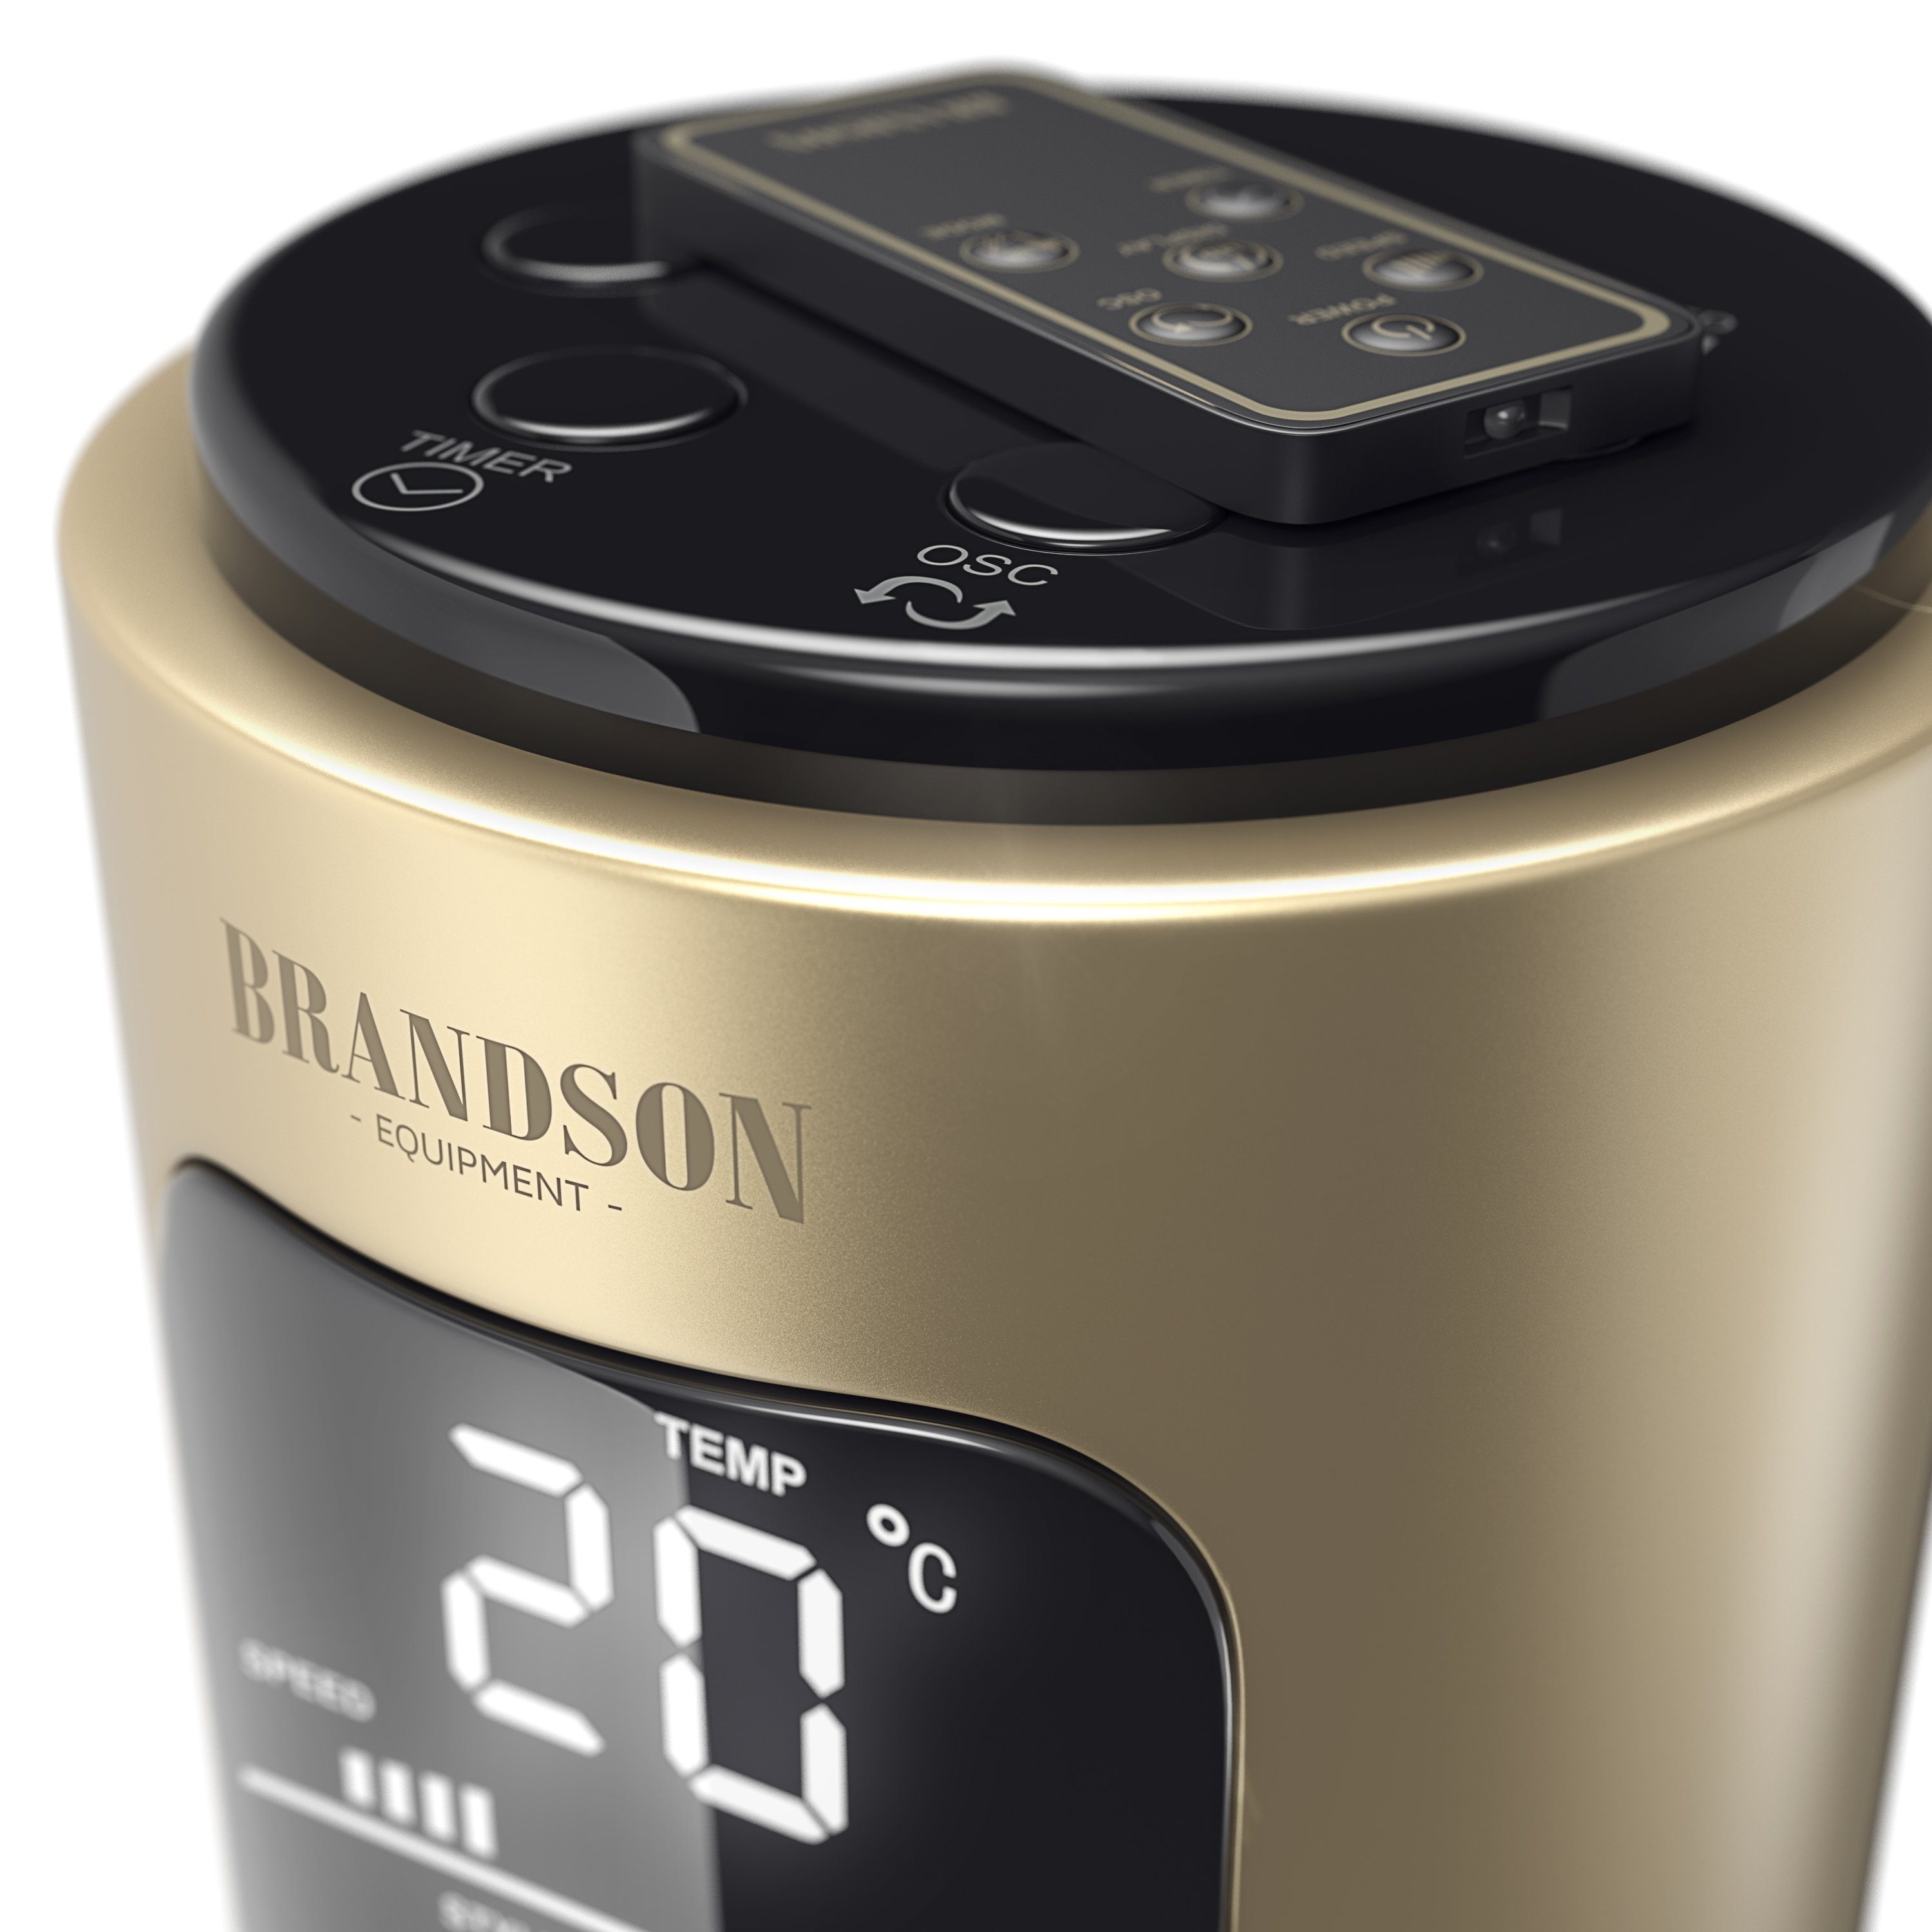 Brandson Turmventilator, Standventilator 96cm, Oszillation 65°, Fernbedienung, Timer, Champagne